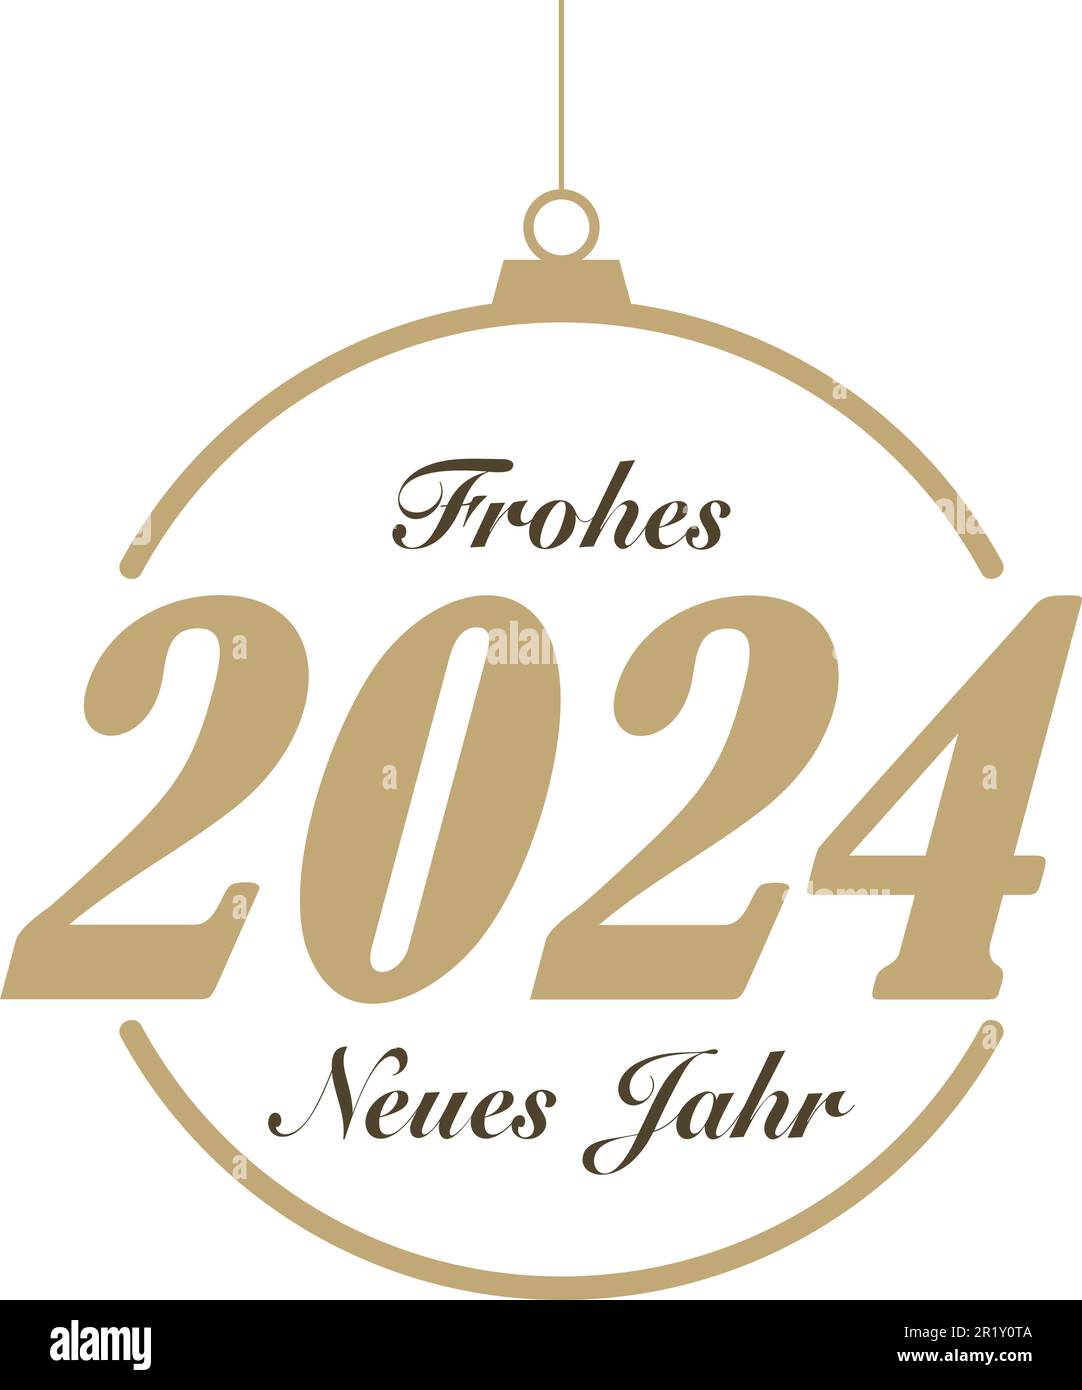 Frohes neues Jahr 2024, Vektor der Grußworte in deutscher Sprache. Frohes Neues Jahr ist ein frohes neues Jahr auf Englisch. Stock Vektor